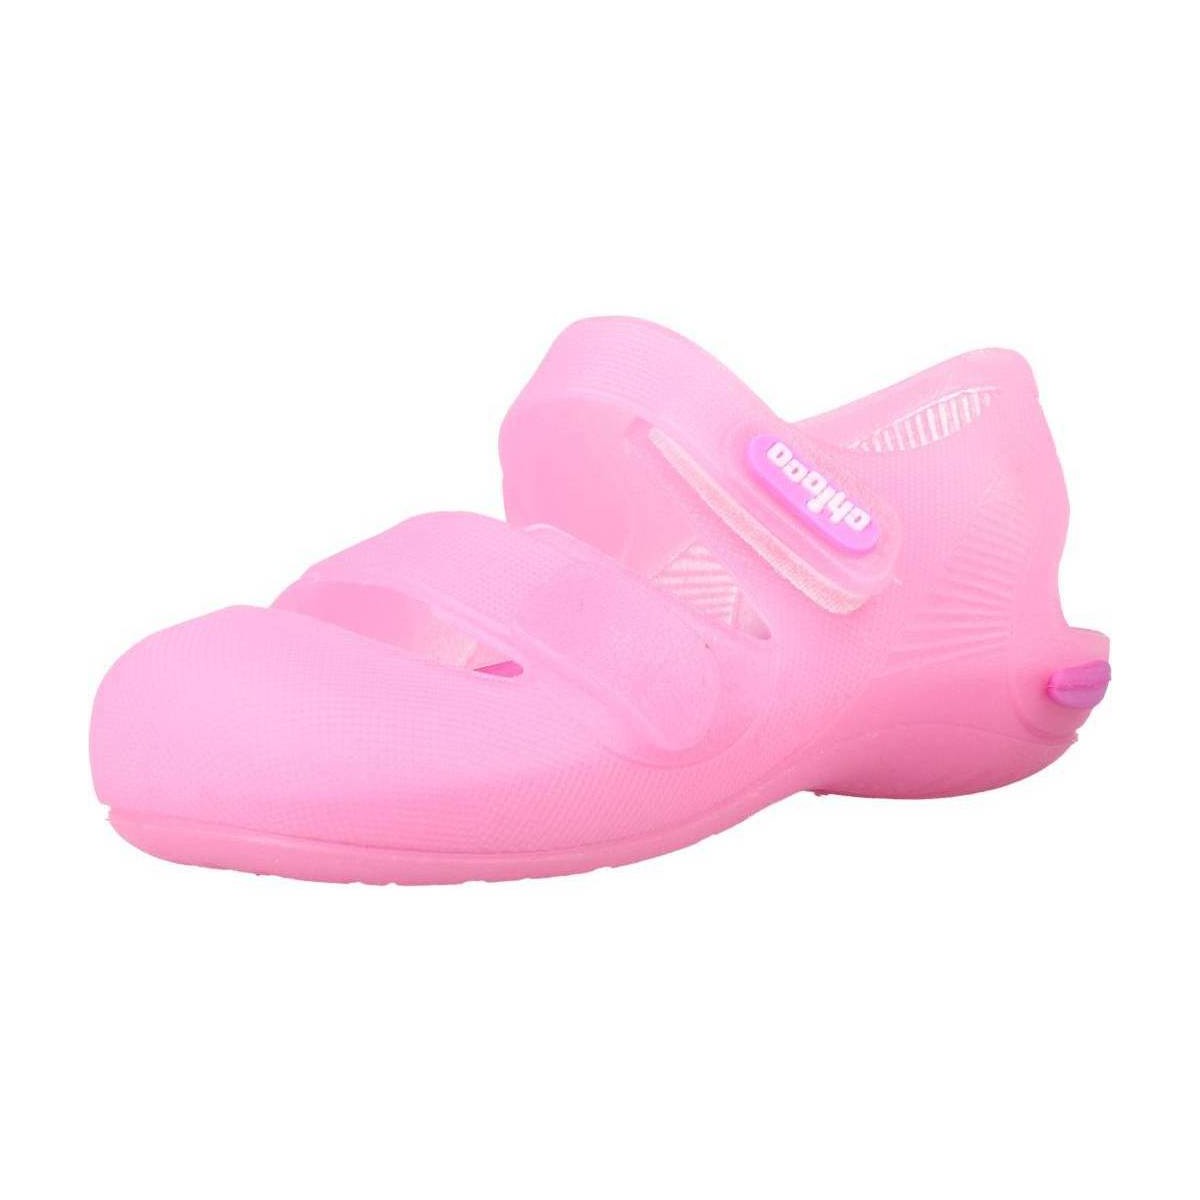 Παπούτσια Κορίτσι Σαγιονάρες Chicco MATTIA Ροζ